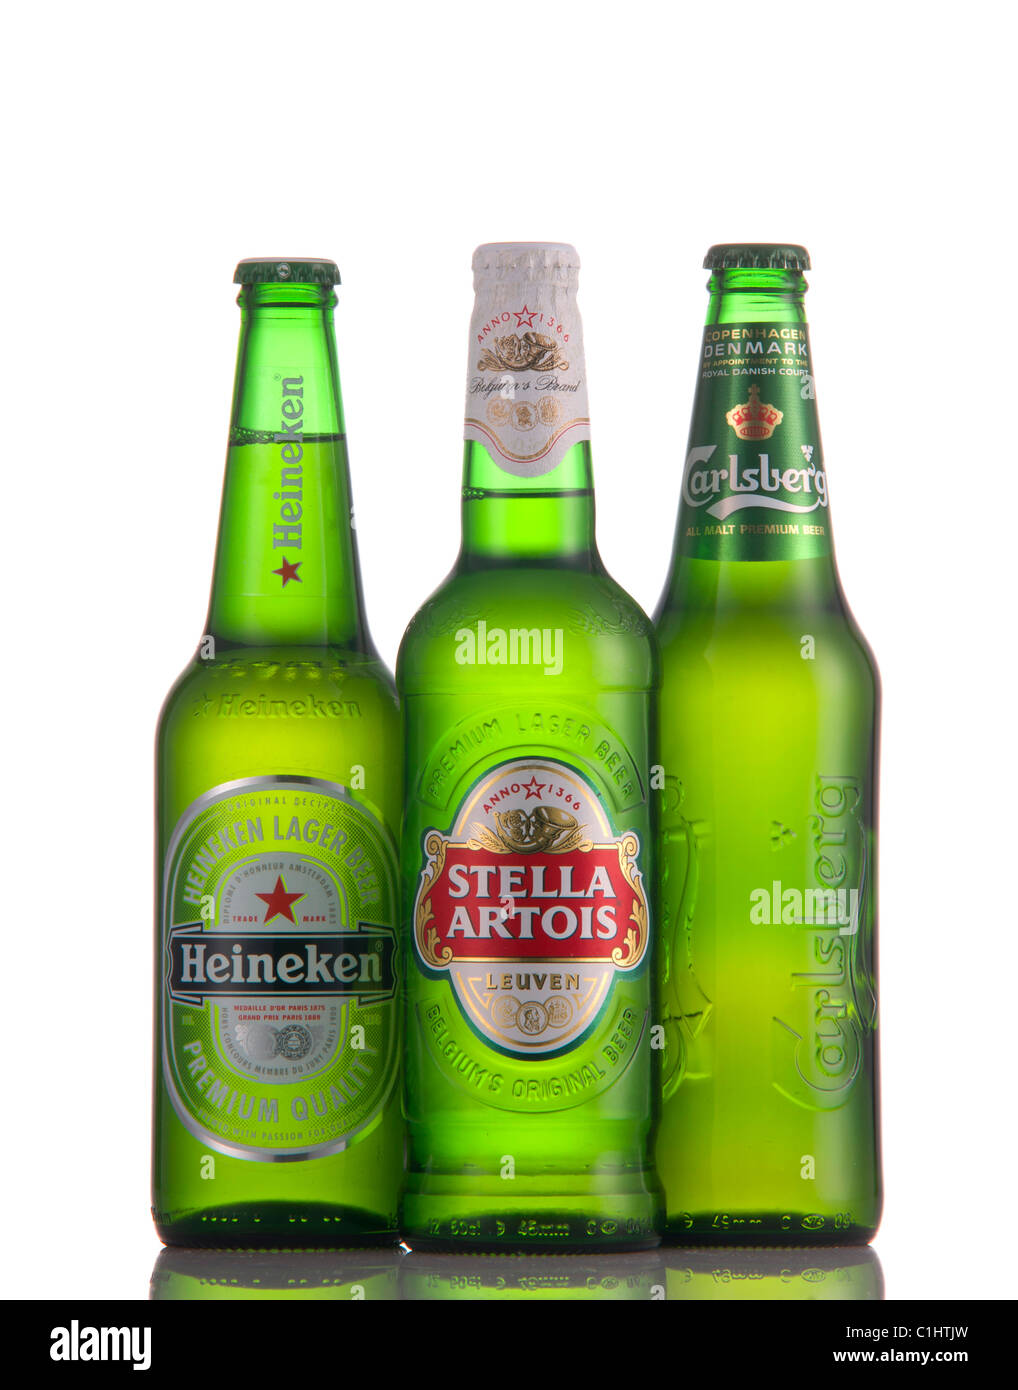 Ochtendung Germania 25 05 2019 Molte Birre in Bottiglia Sul Ghiaccio in Una  Vasca Da Bagno Aperta Per Una Festa Immagine Stock Editoriale - Immagine di  gocce, contenitore: 160545074